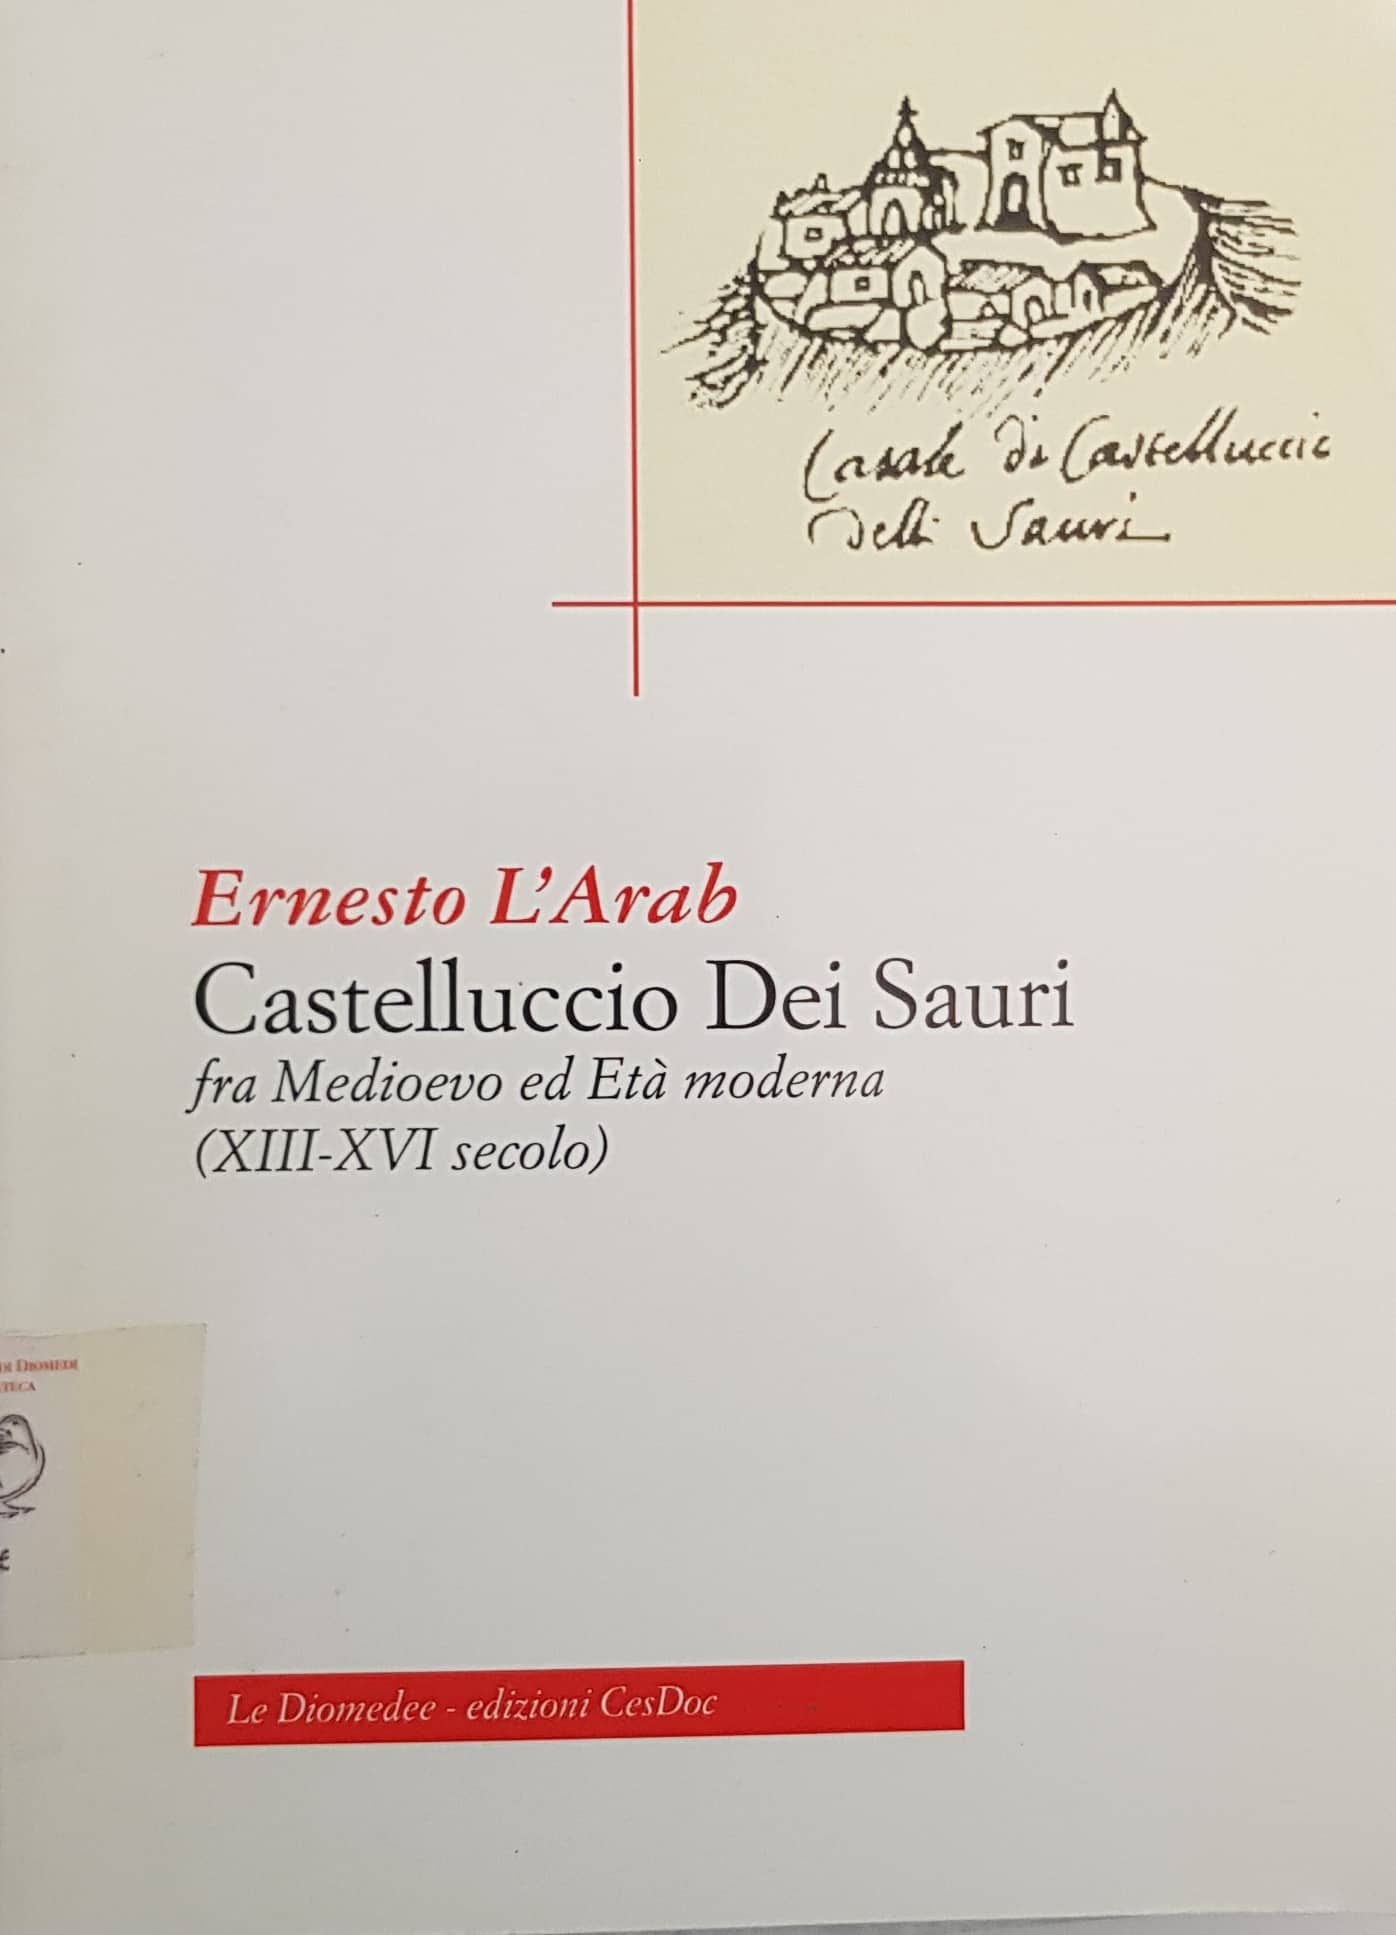 Copertina di Castelluccio dei Sauri (2001)